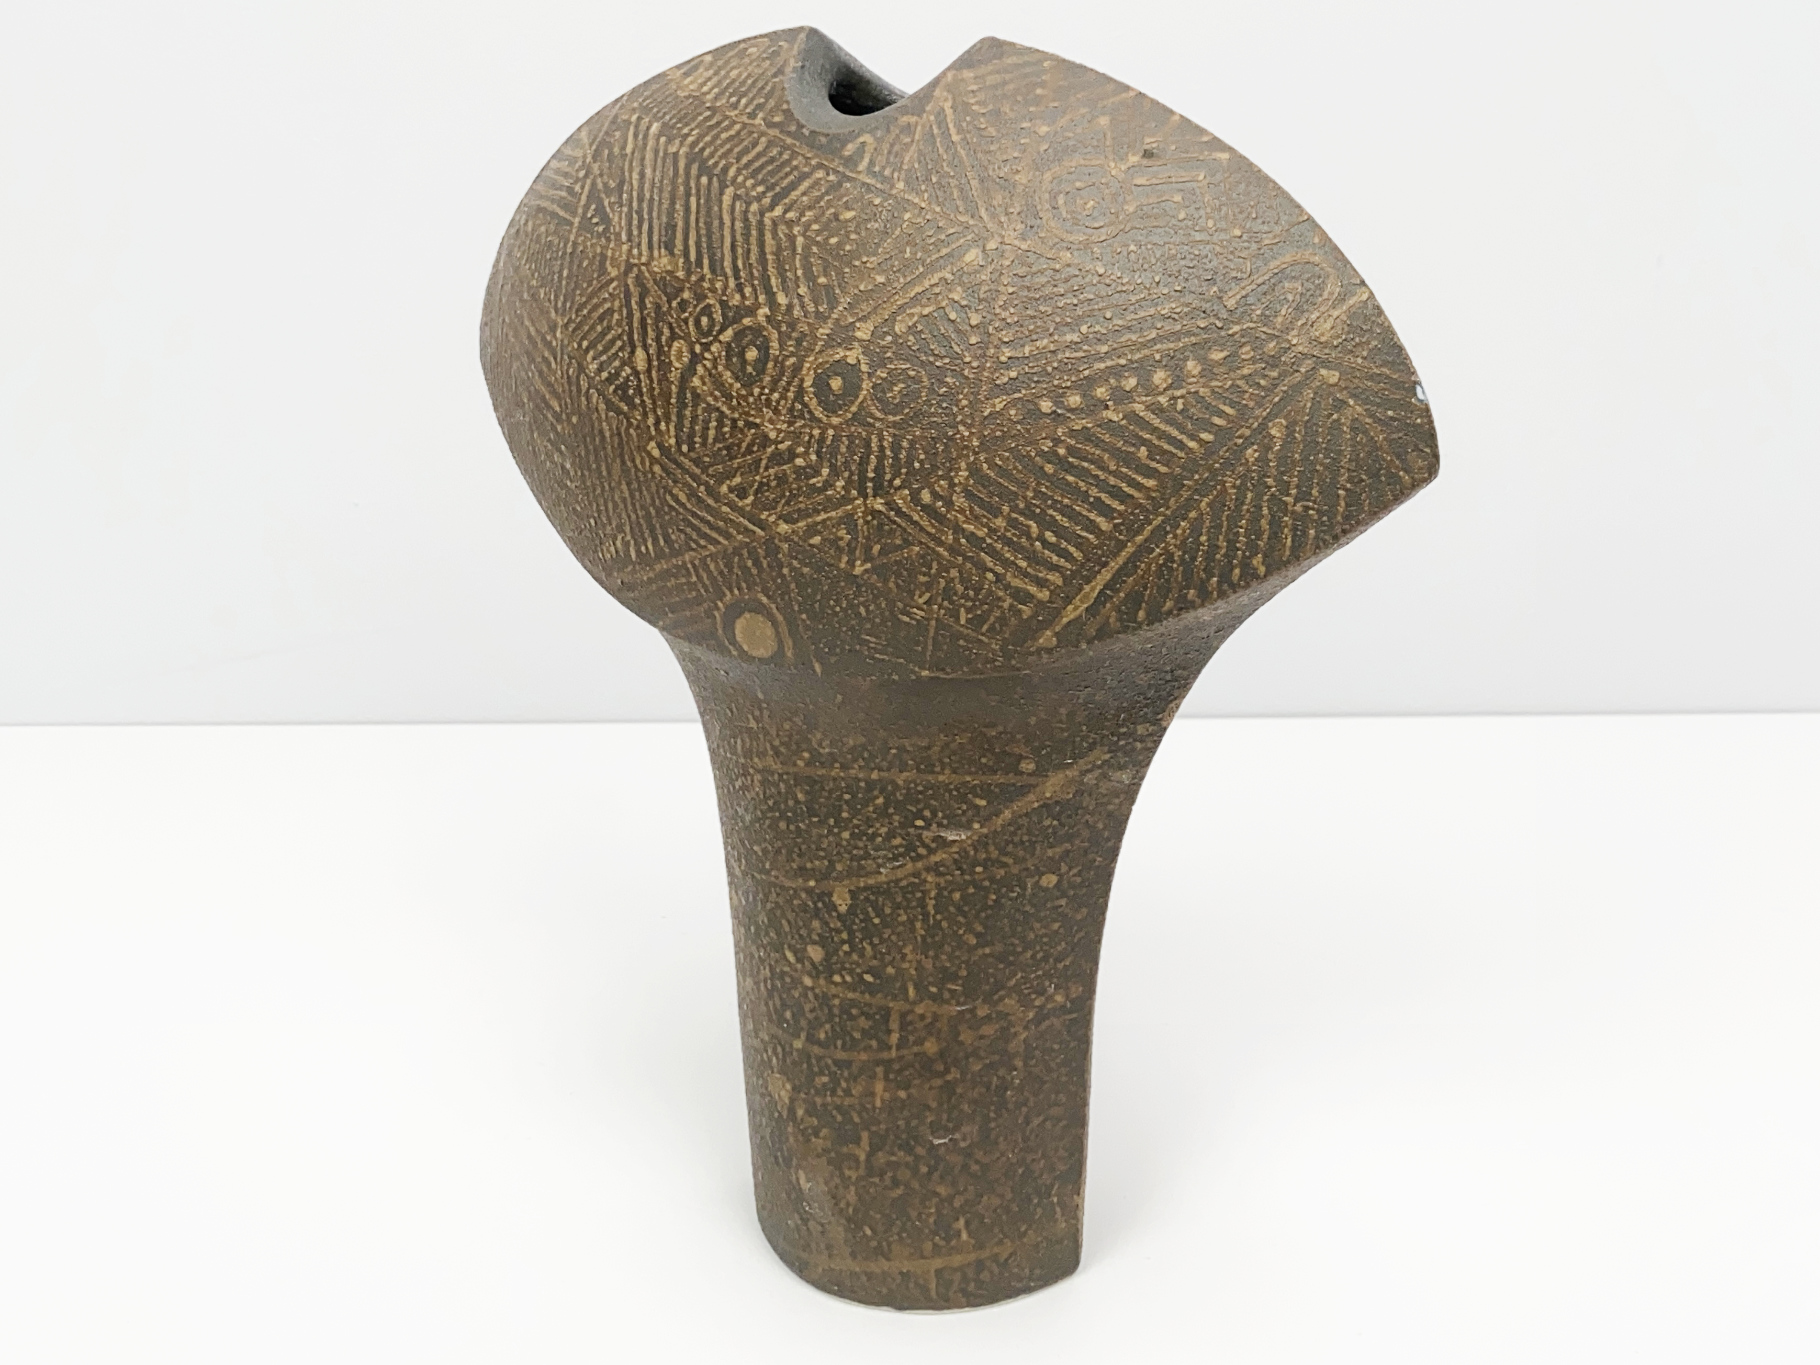 Vase, Ceramic, Stoneware, Unique Piece, geometric Decoration, Manganese Engobe, painted with light Engobe, by Wilhelm & Elly Kuch, 2000